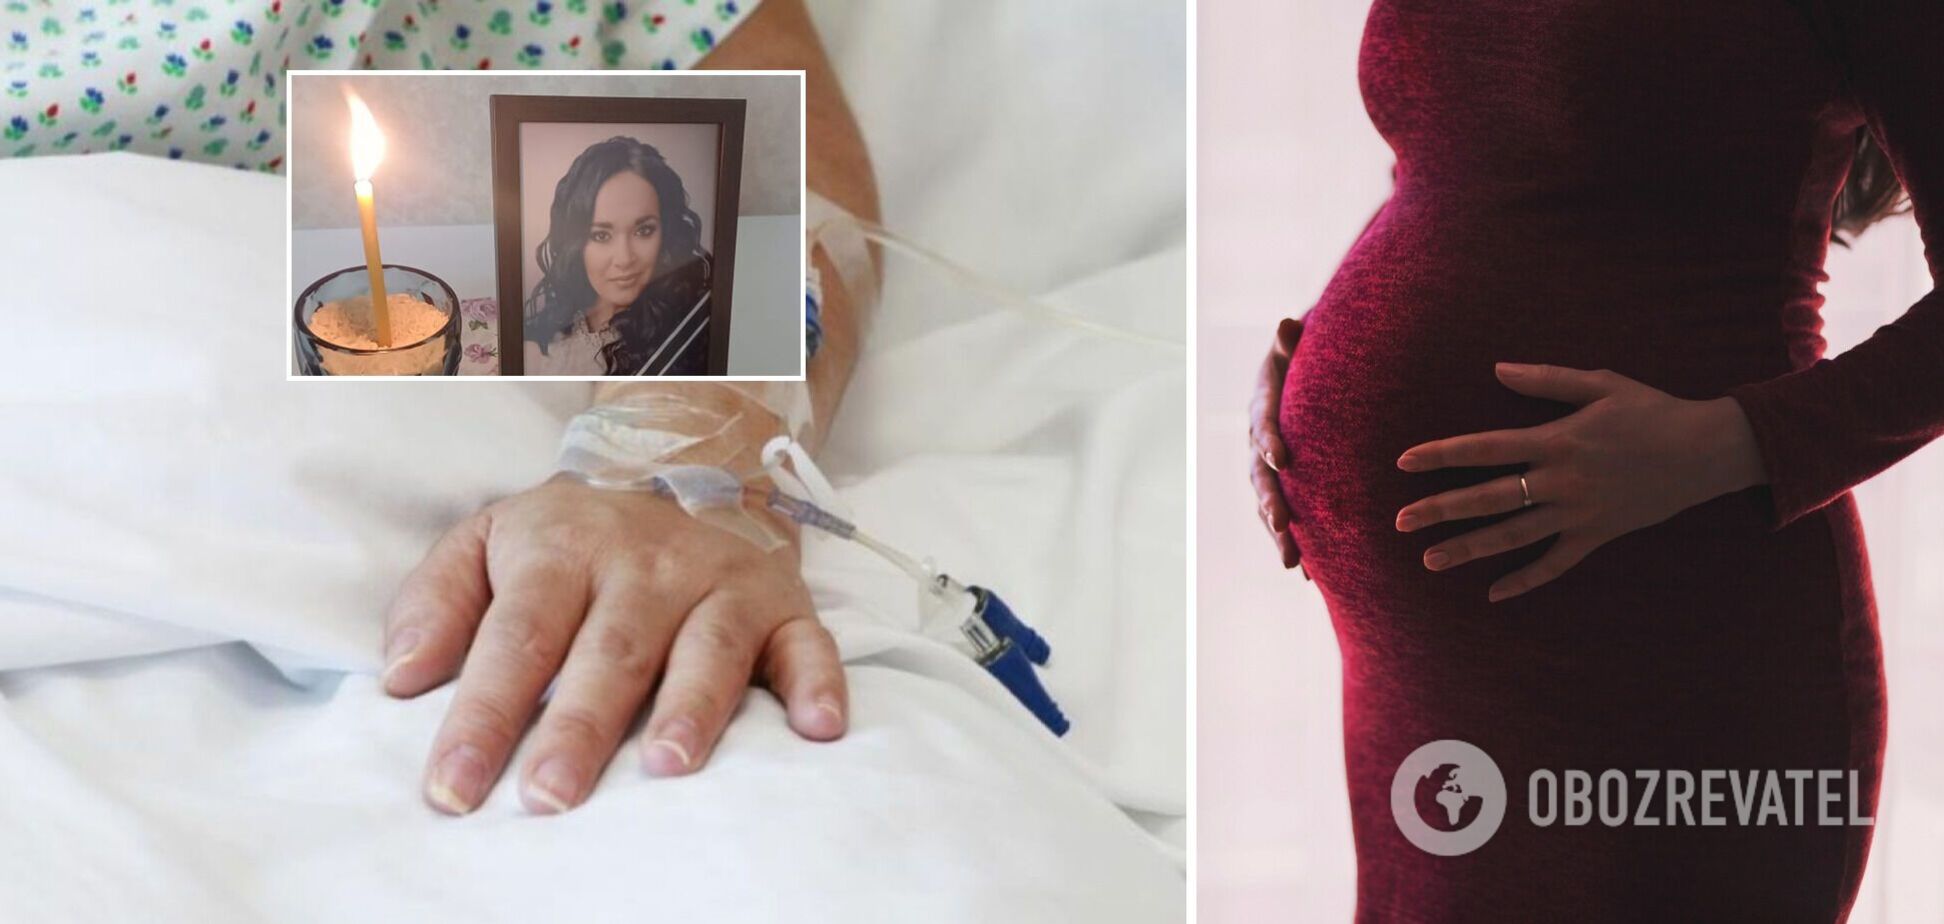 В одесском роддоме от COVID-19 умерла беременная, муж обвинил медиков в халатности